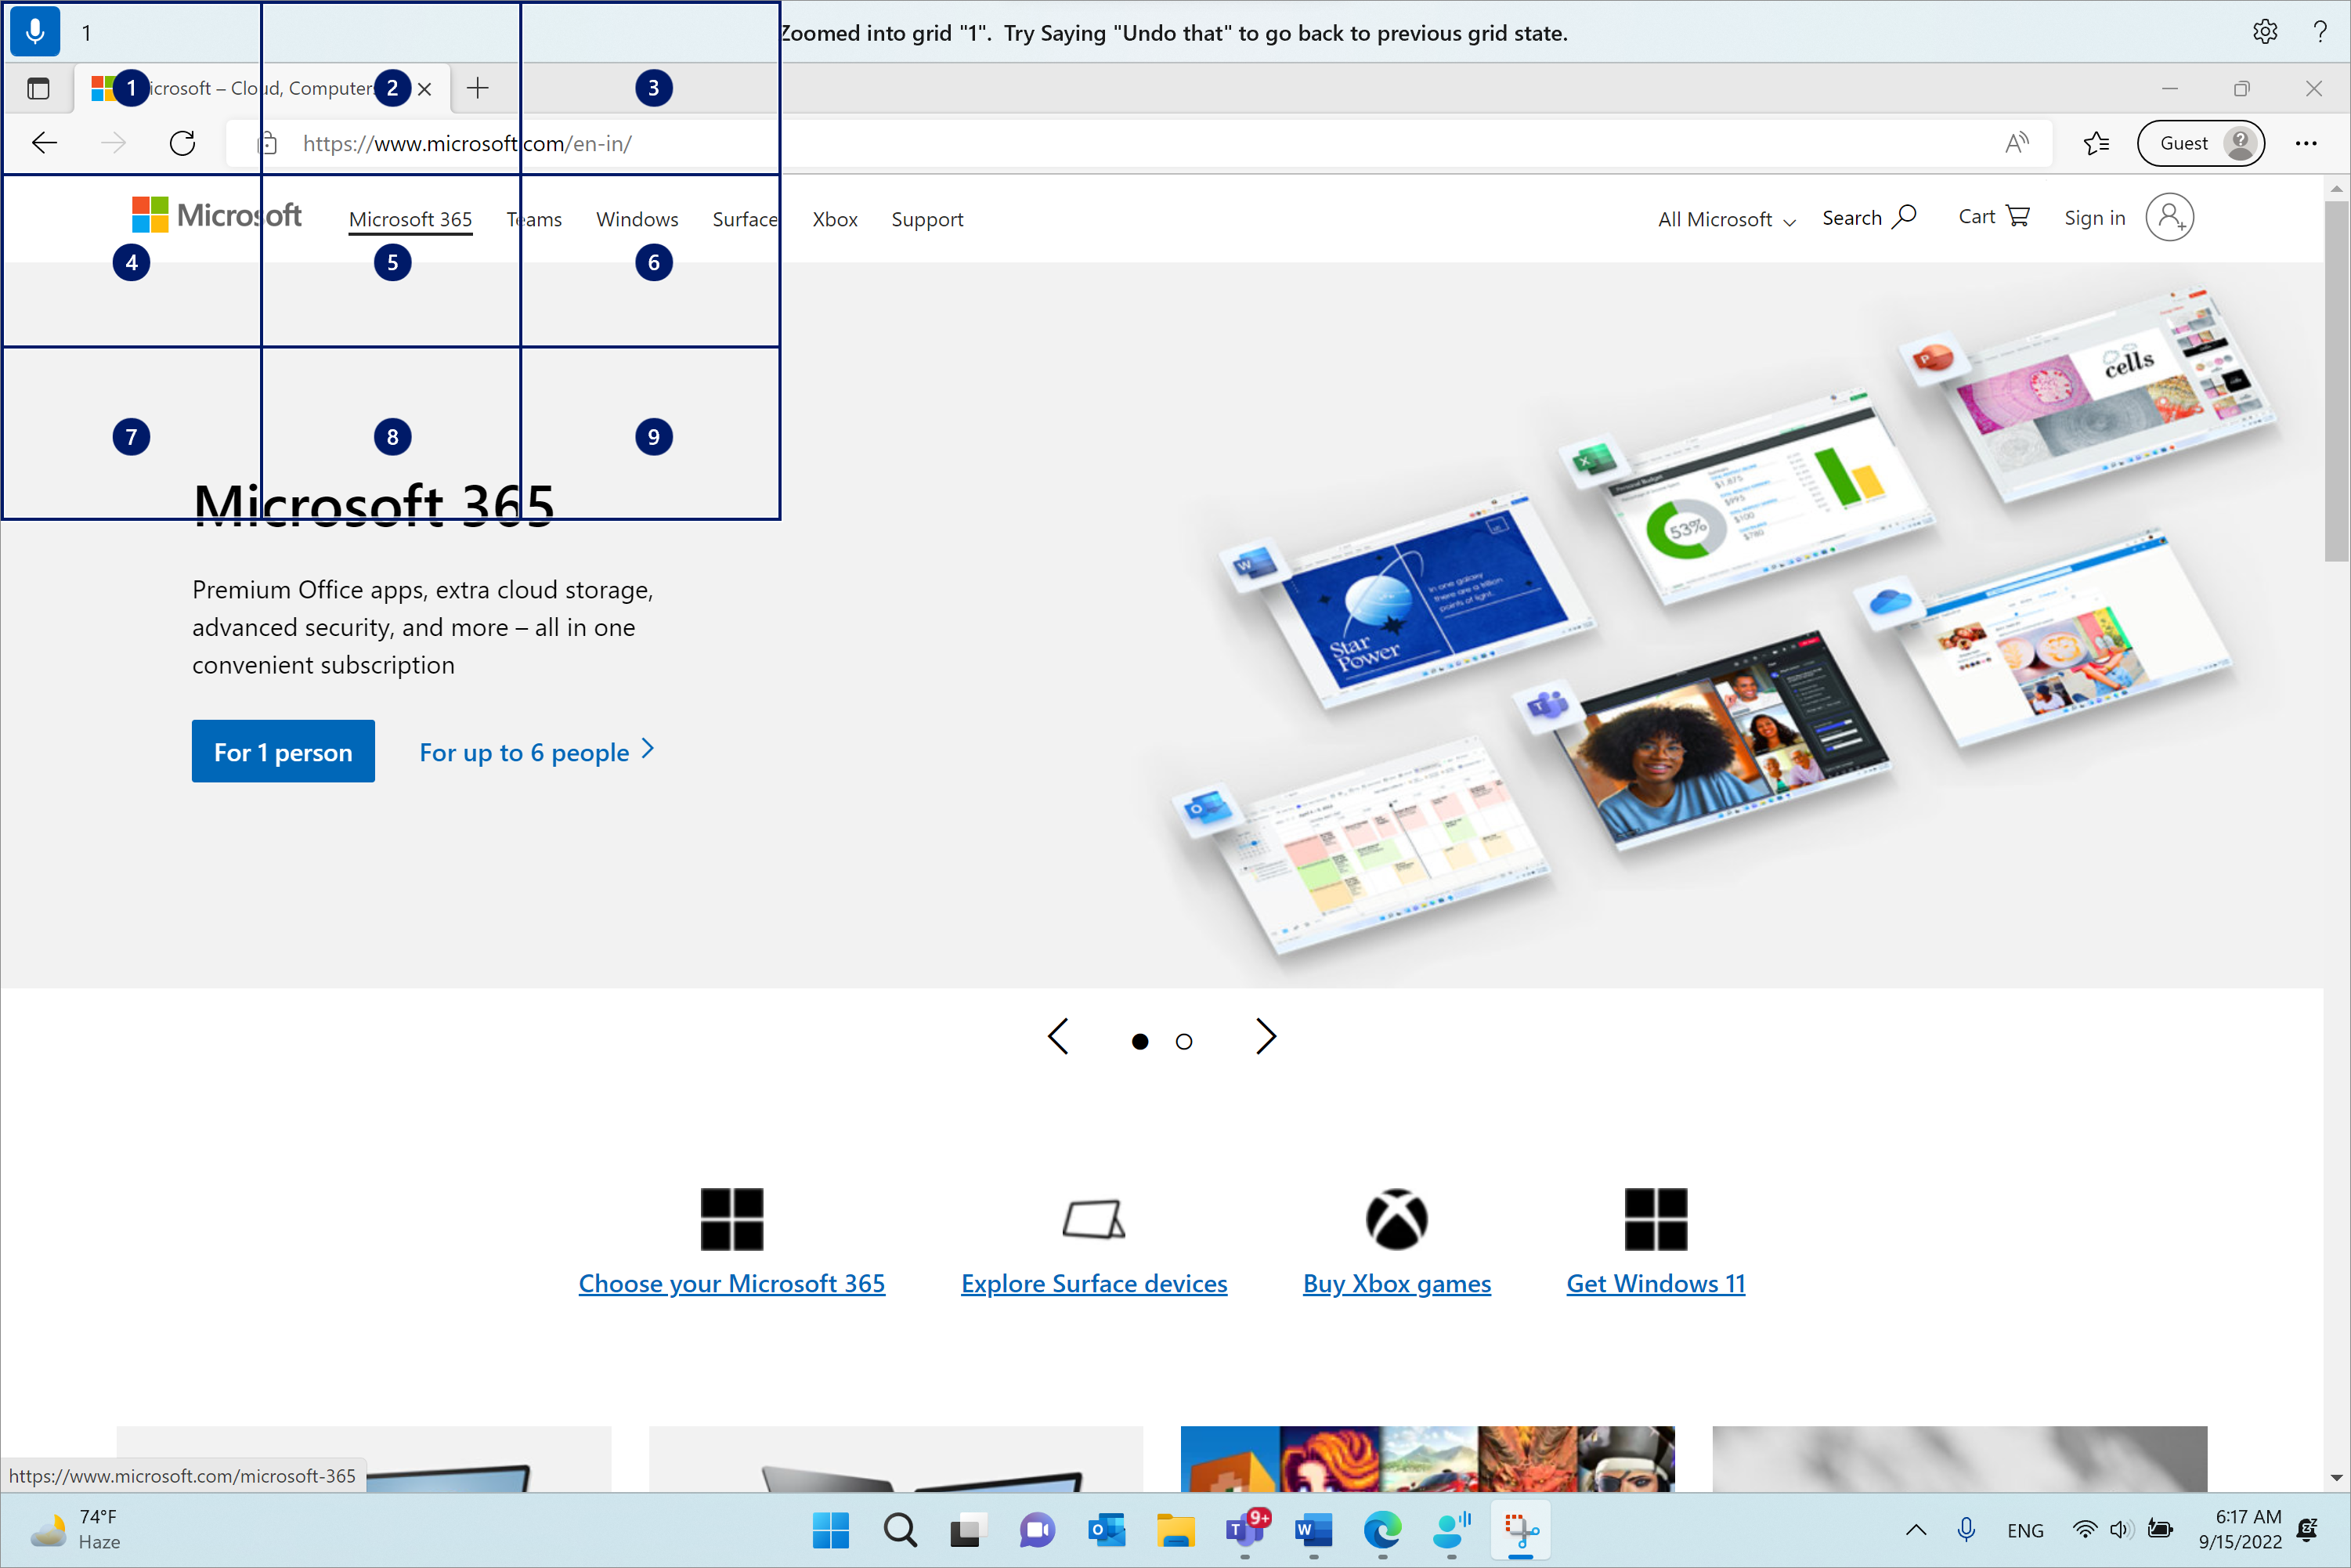 Microsoft Edge è aperto e nella pagina Microsoft.com. La barra di accesso vocale è in alto e in stato di ascolto. Il comando emesso è "1" e il feedback visualizzato è "Zoomato nella griglia "1". Provare a dire "Annulla" per tornare allo stato precedente della griglia.